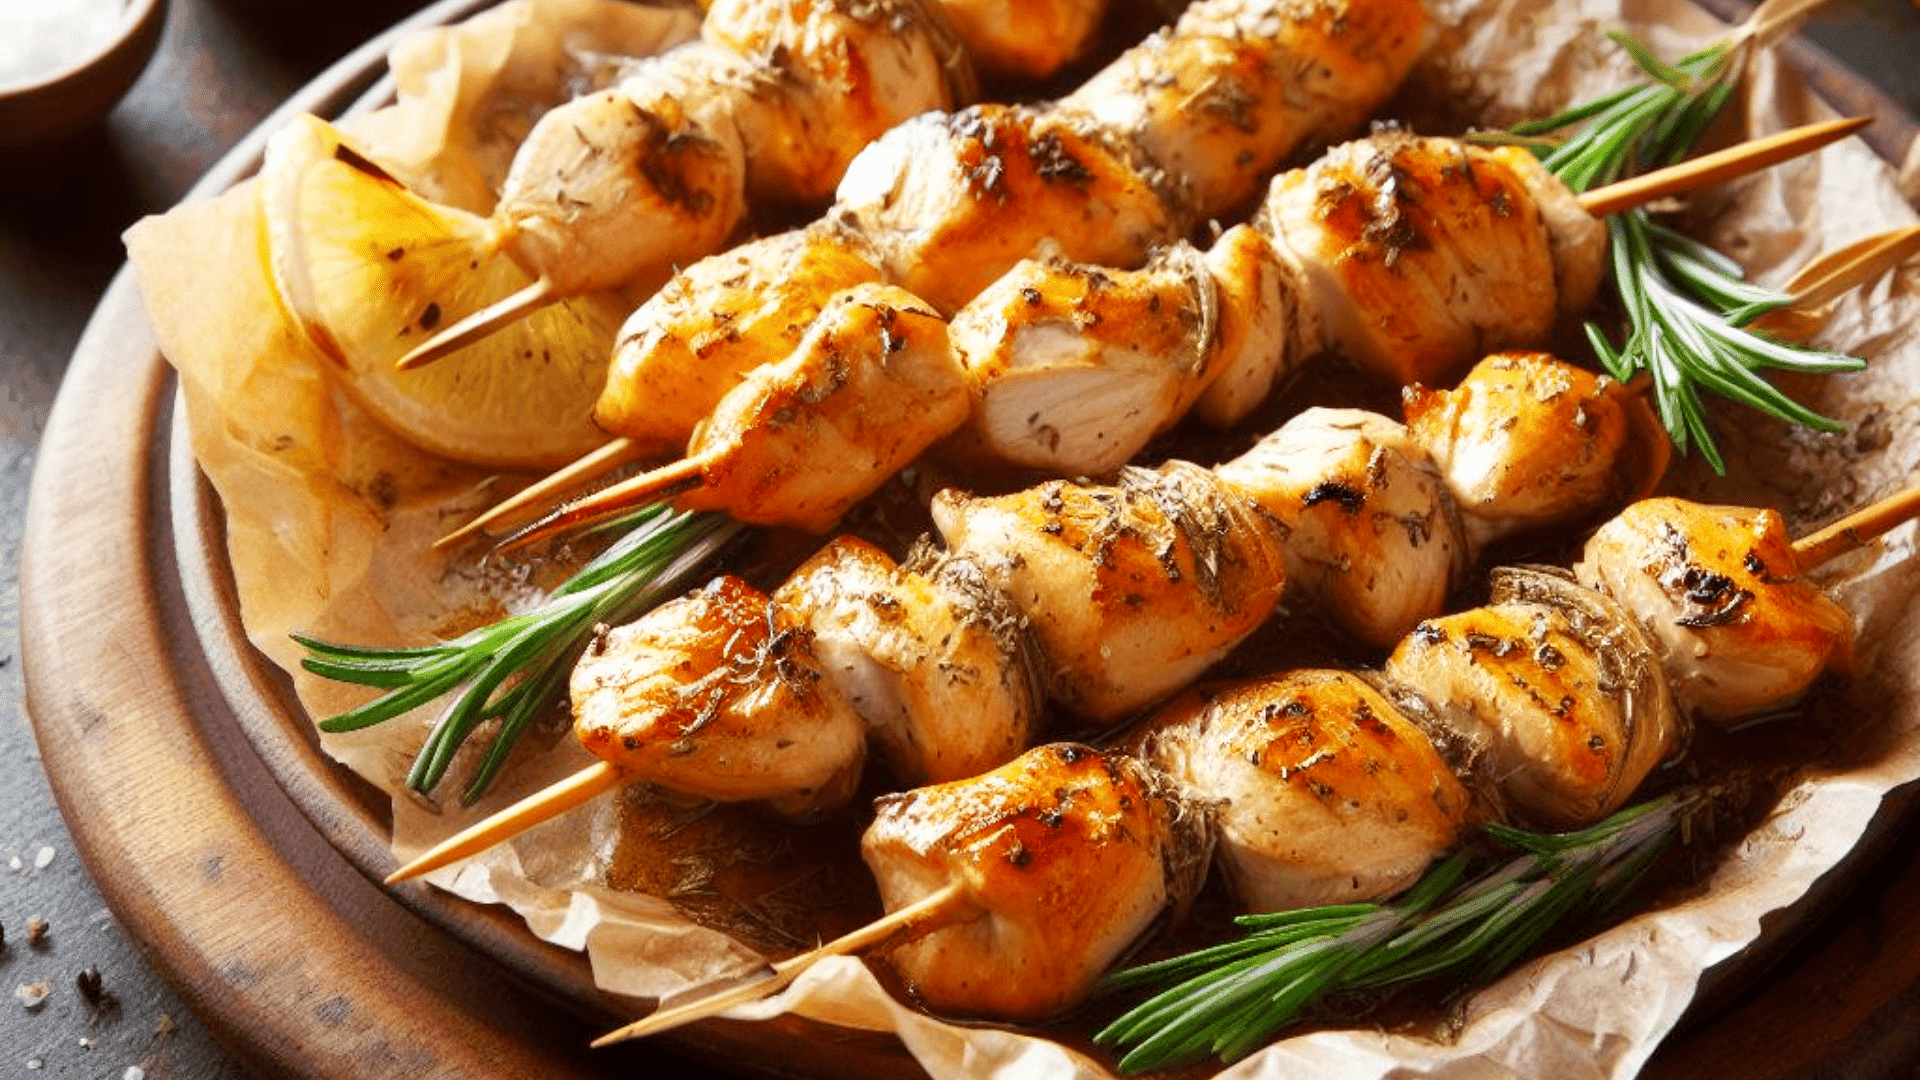 Marinated Chicken Skewers or Greek Chicken Kebabs